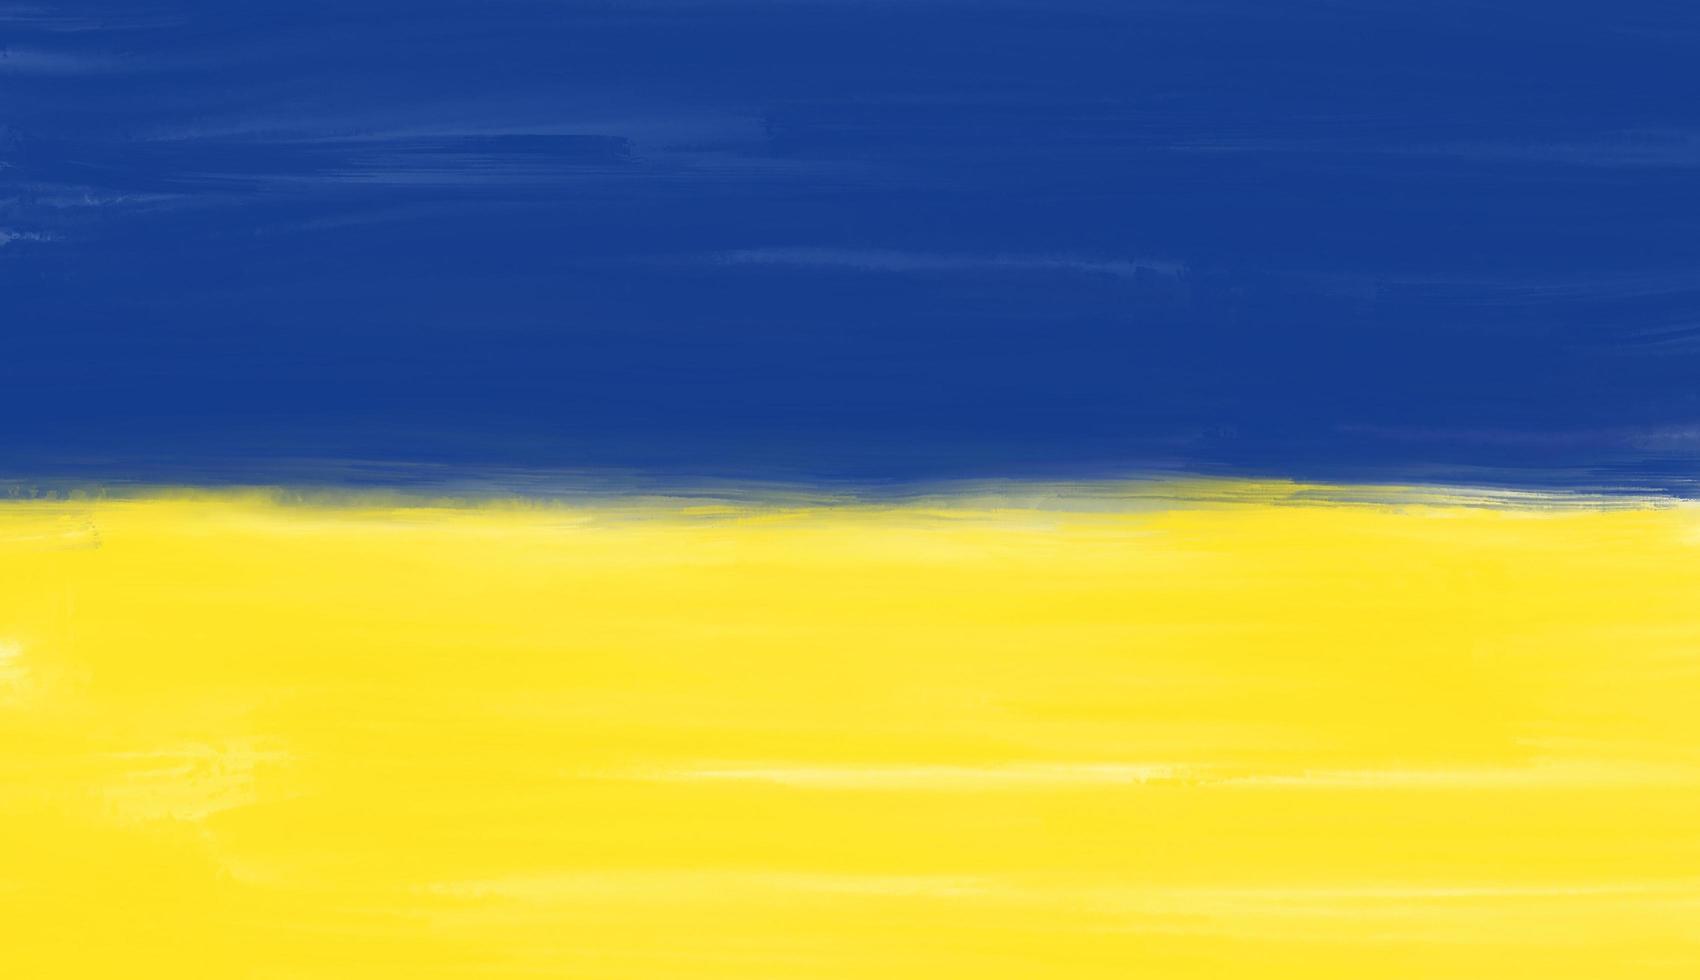 bandera de ucrania, fondo de trazo de pincel. símbolo, afiche, estandarte de la bandera nacional. dibujo de estilo diseño foto